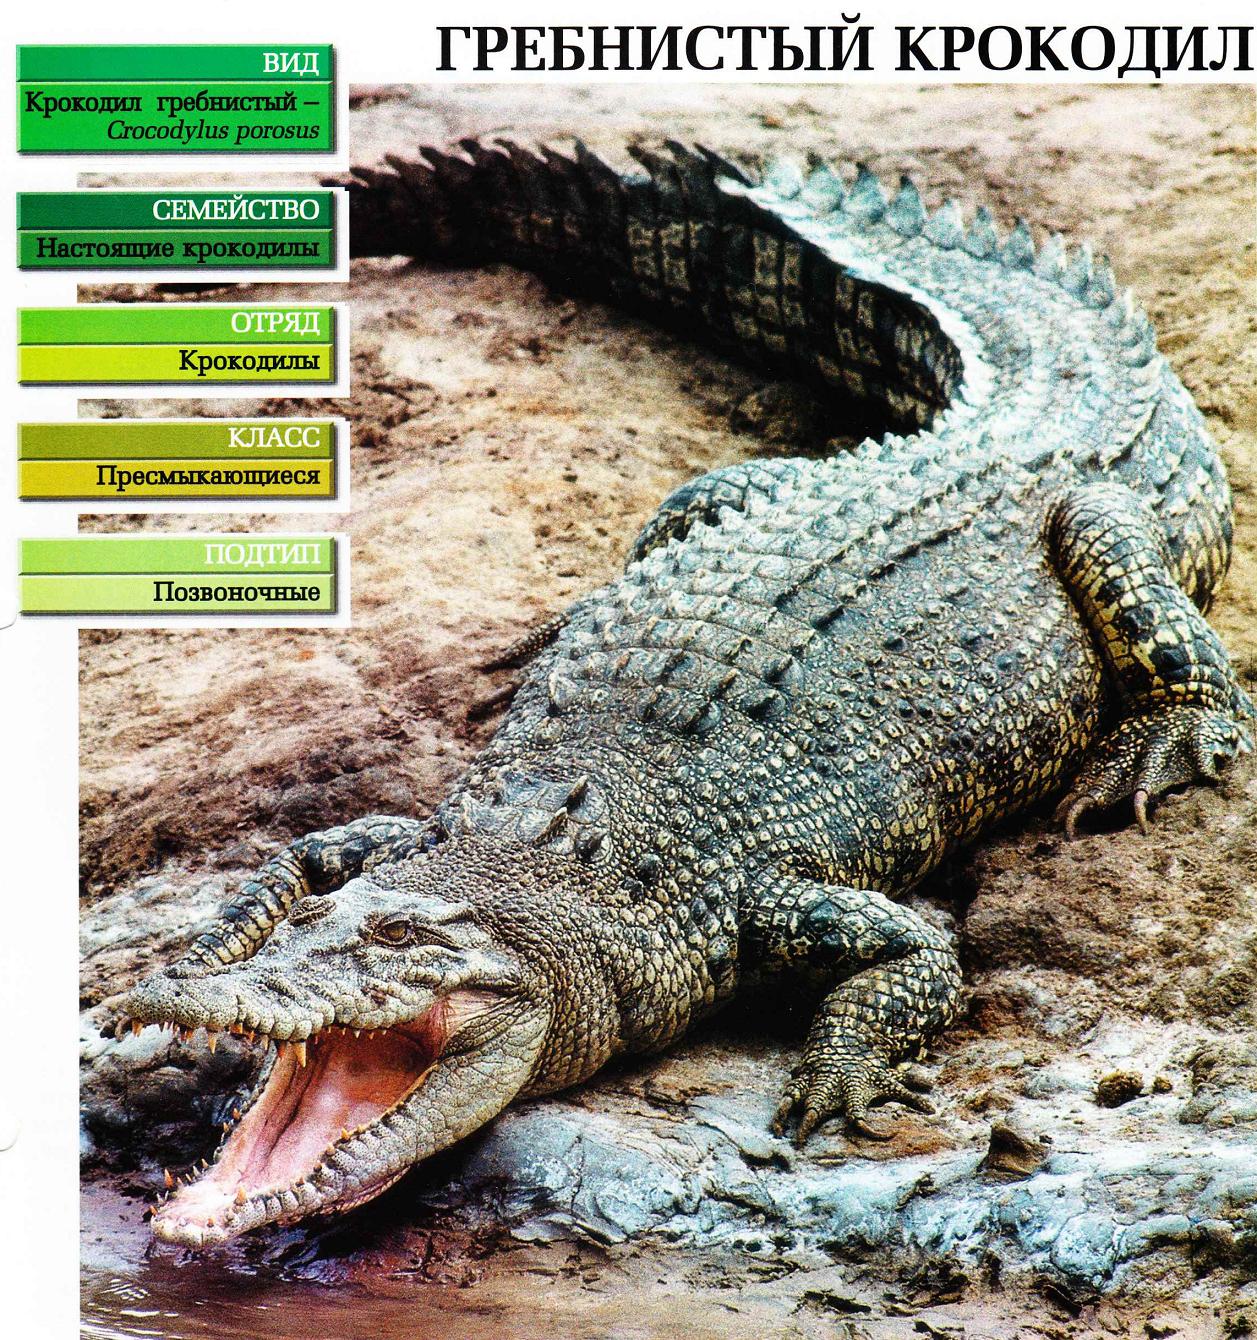 Систематика (научная классификация) крокодила гребнистого. Crocodylus porosus.